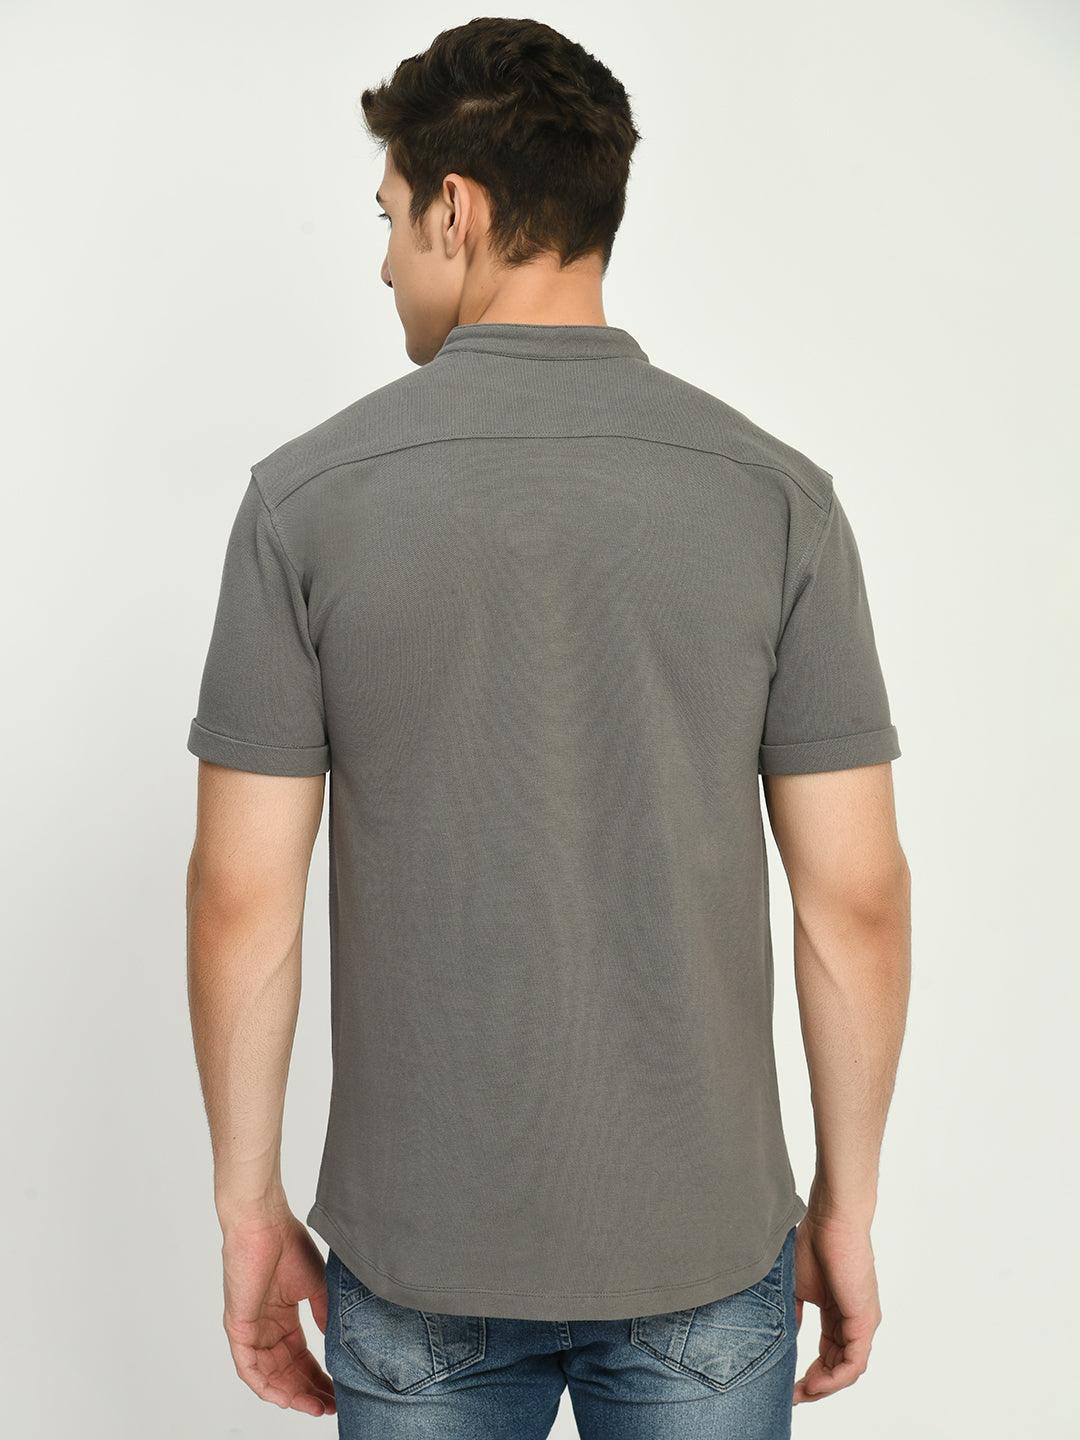 Men's Regular Fit Knit Shirt with Mandarin Collor